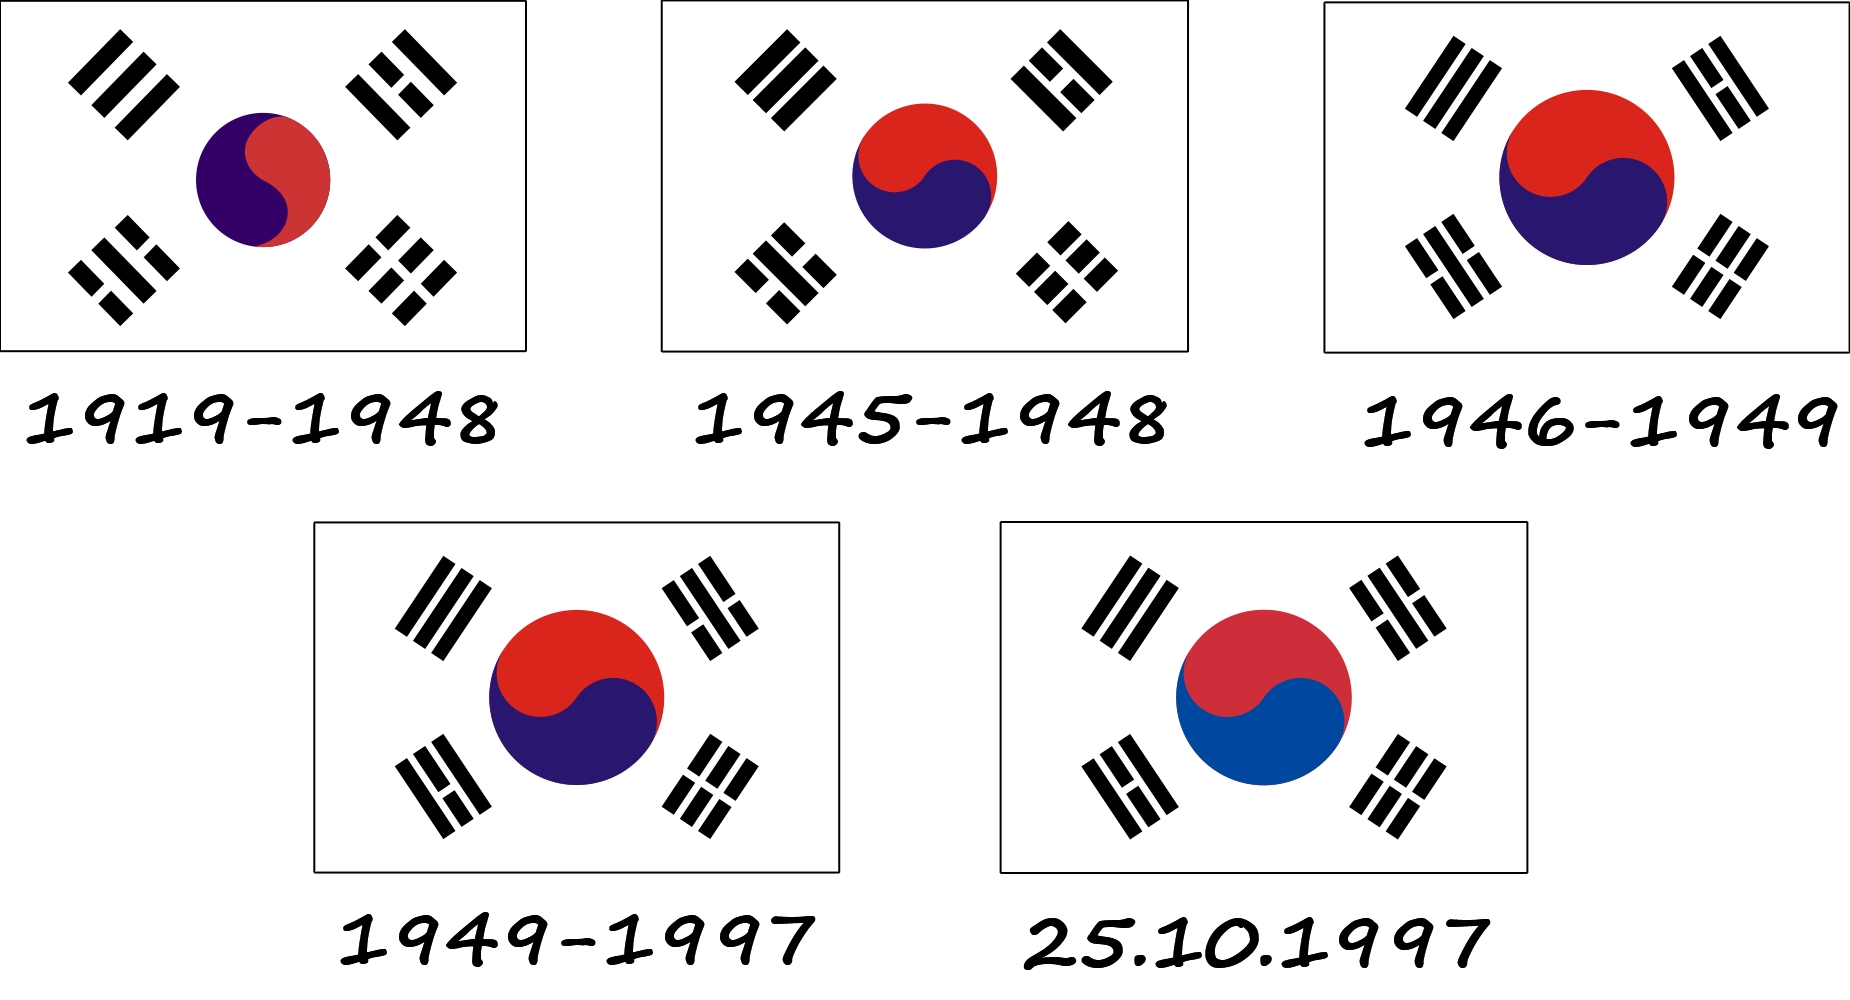 Evolución de la bandera surcoreana (Taegeukgi)